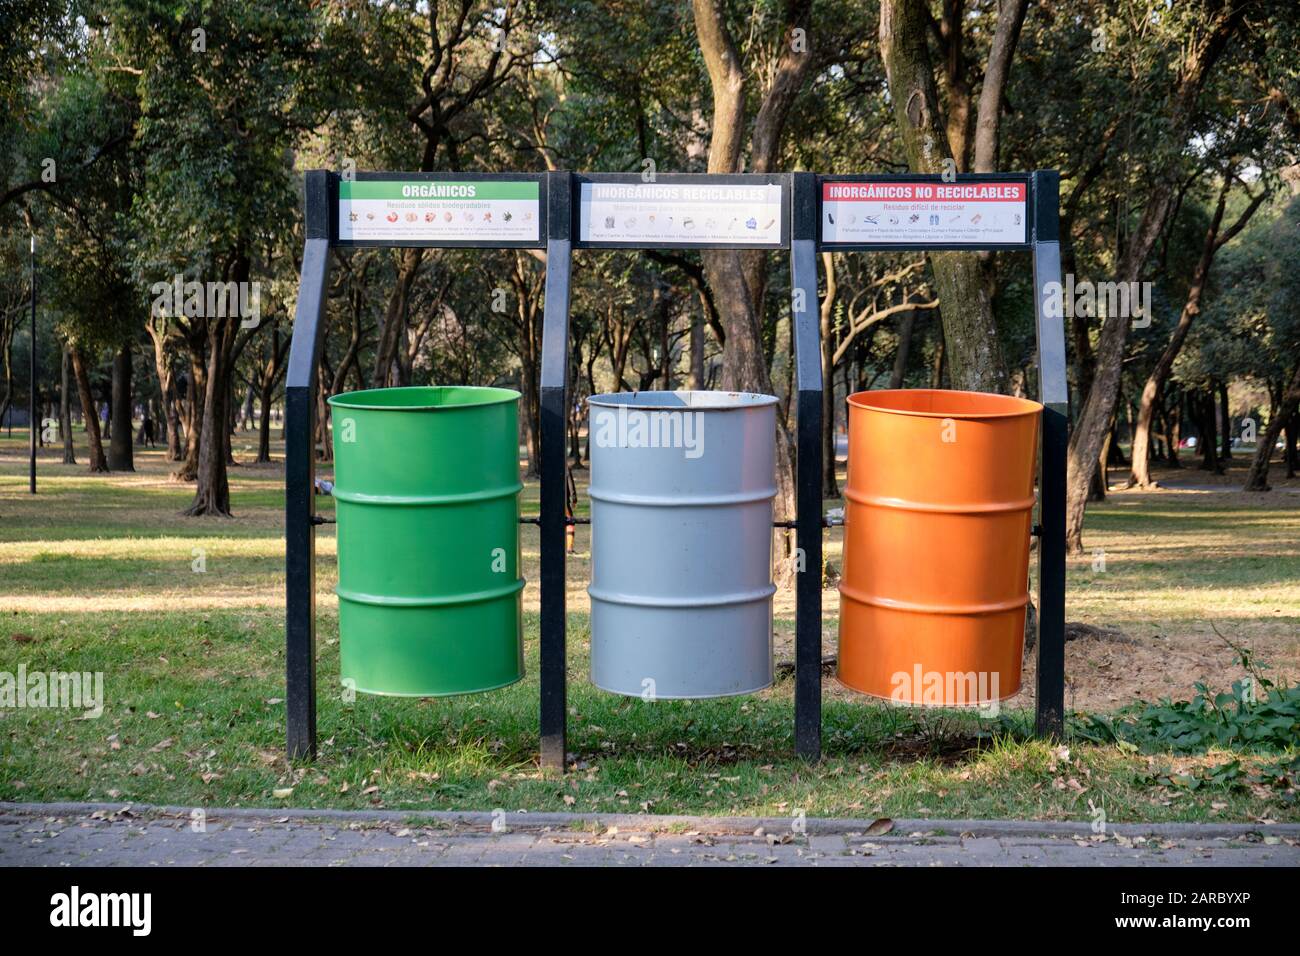 Trois grands conteneurs de déchets pour la collecte sélective des ordures dans un parc municipal du Mexique, aux couleurs du drapeau national. Banque D'Images